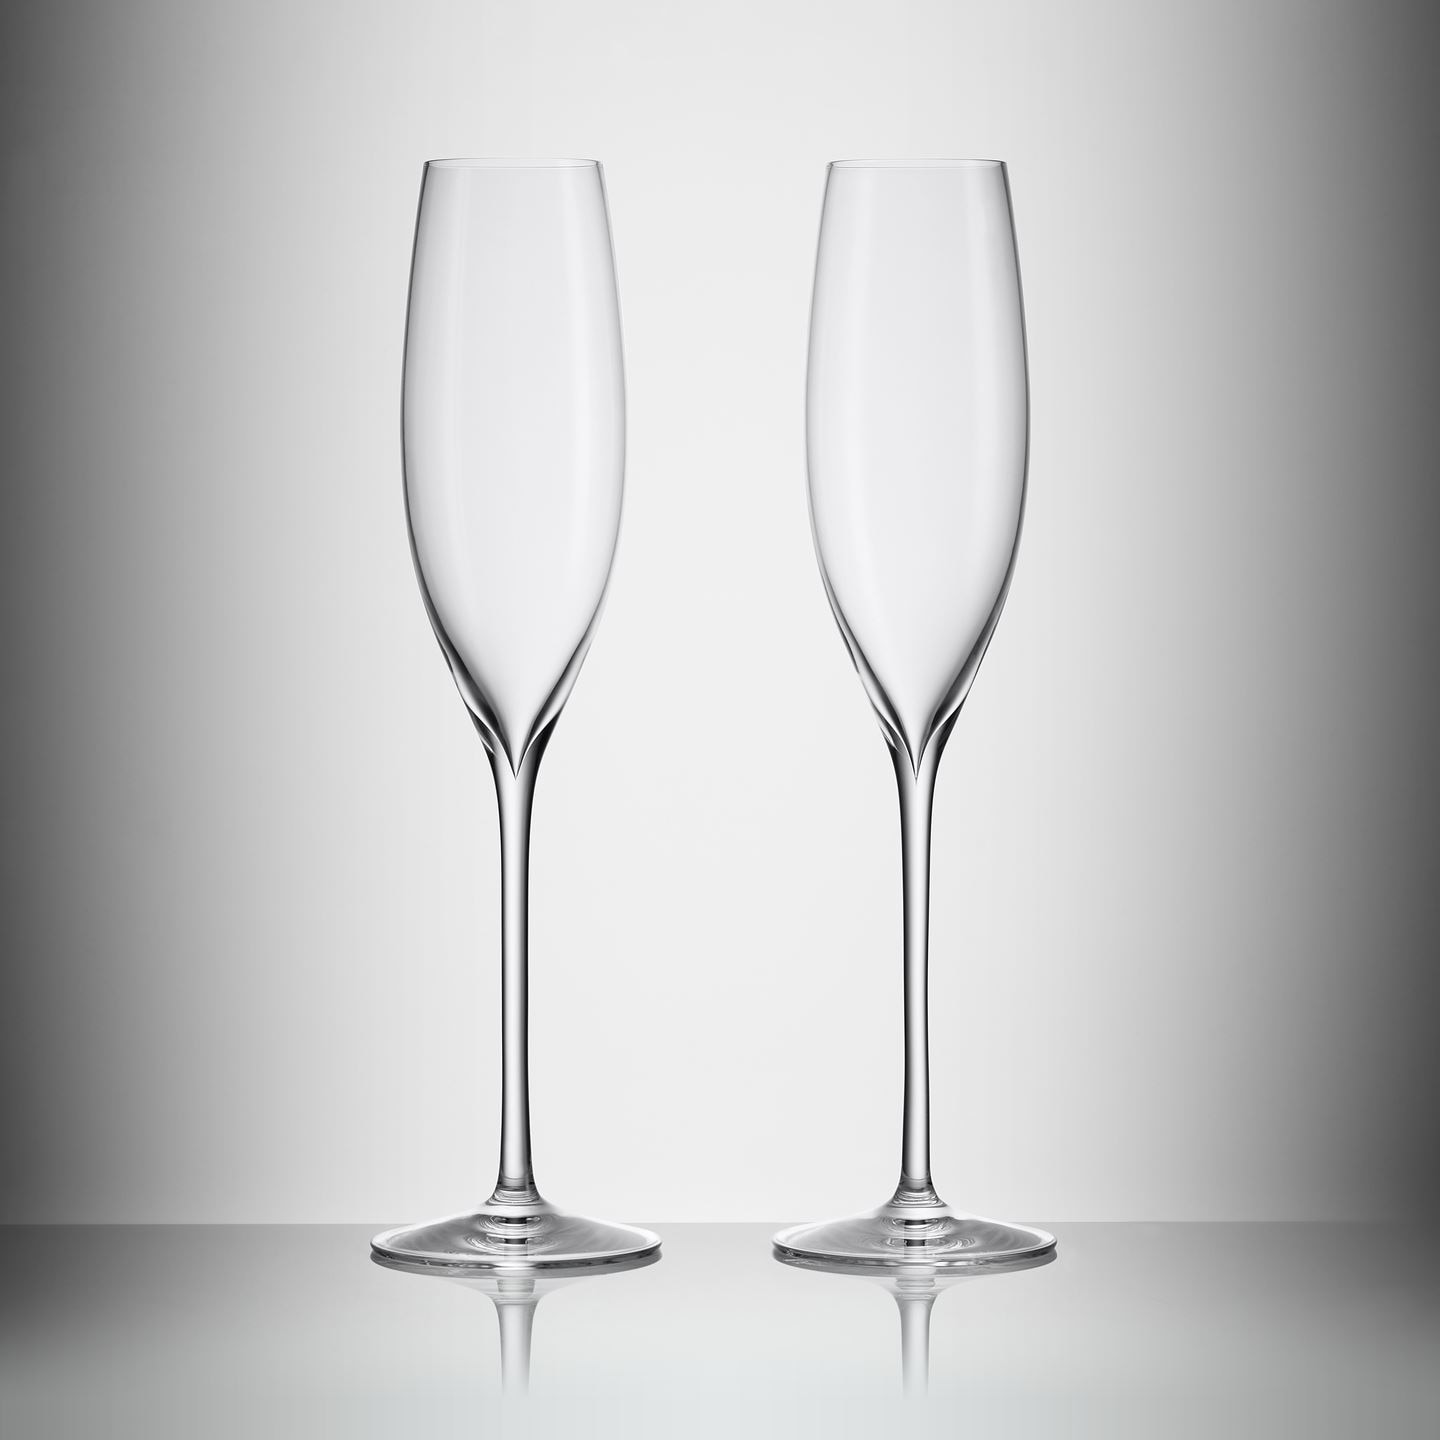 Waterford Elegance Merlot Wine Glass, Pair